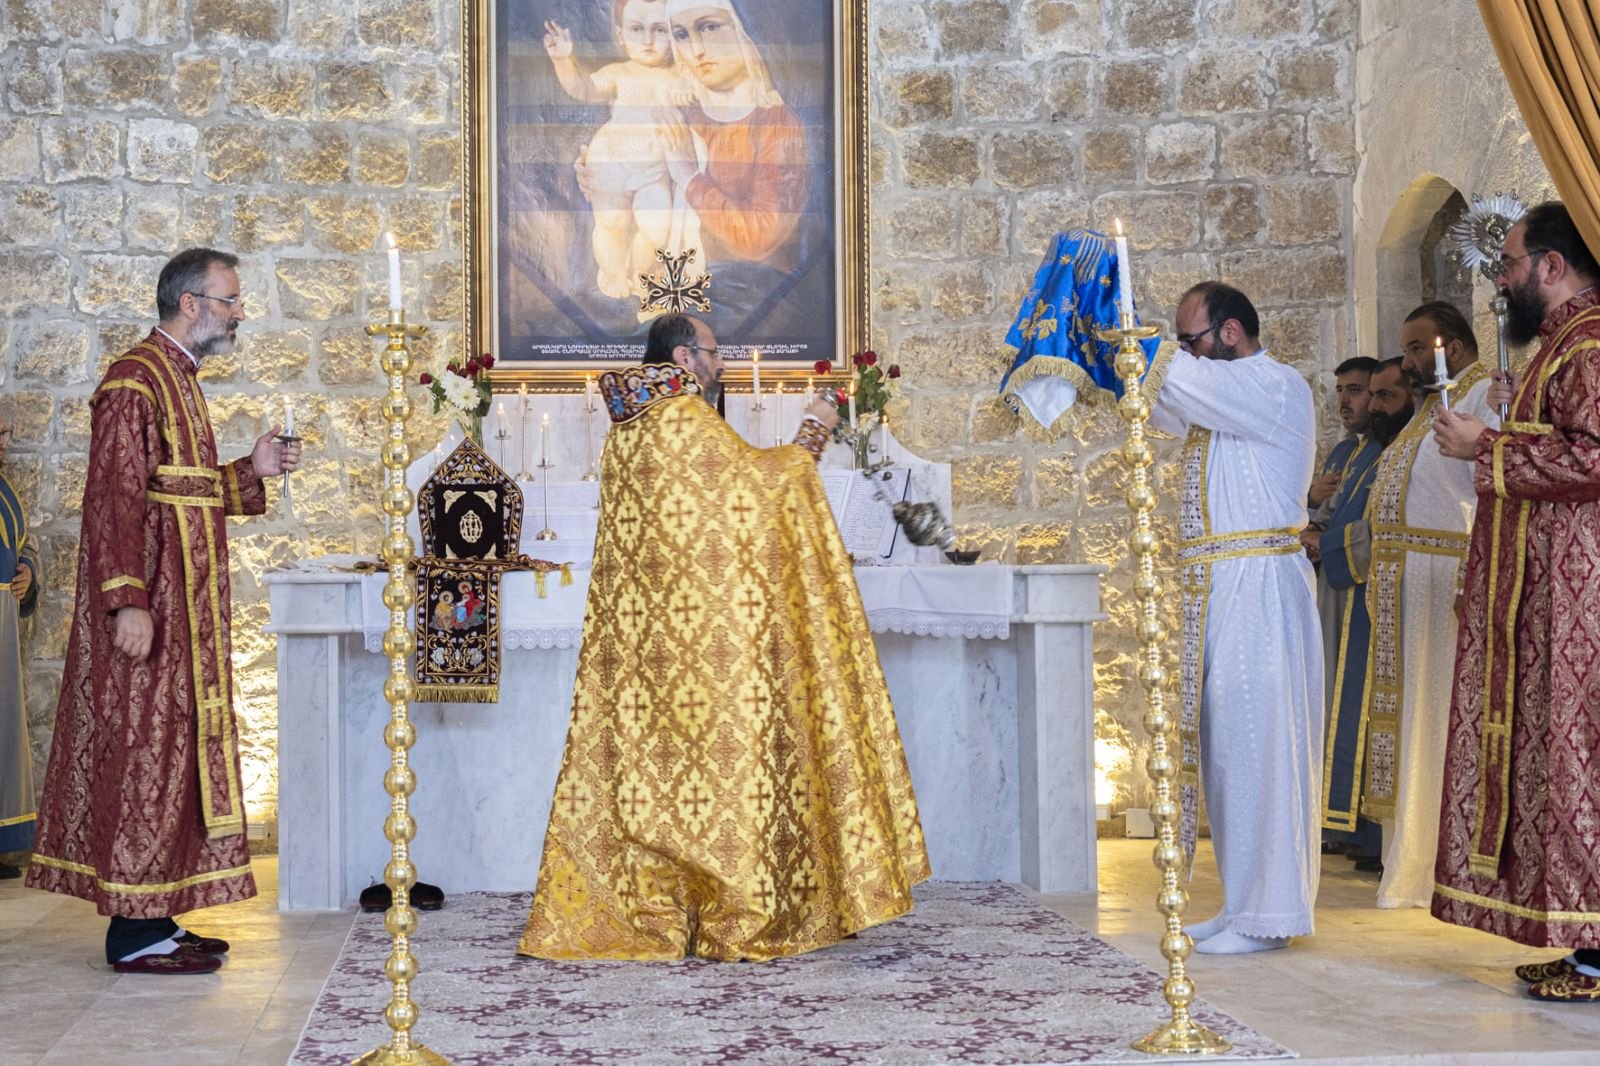 Մալաթիայի Սուրբ Երրորդություն եկեղեցում 106 տարվա դադարից հետո առաջին պատարագ է մատուցվել